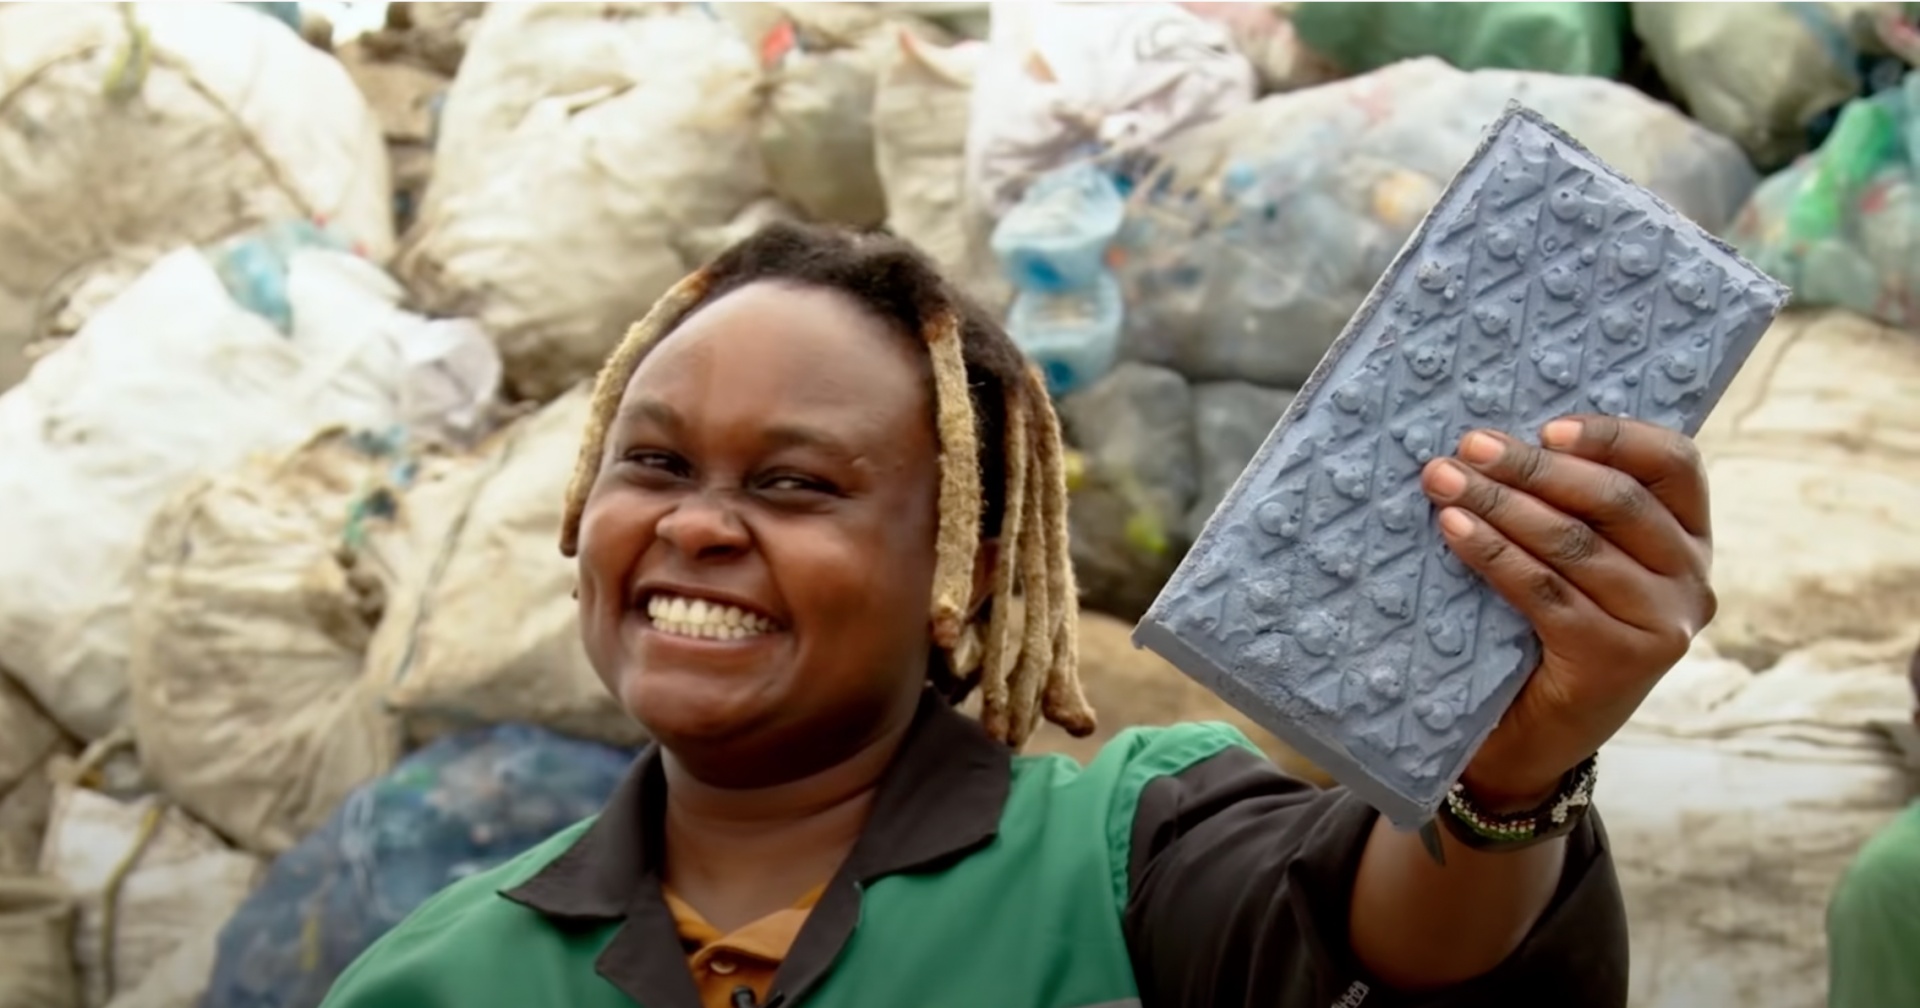 ไม่รอรัฐแก้ปัญหา! สาวชาวเคนยาสร้างอิฐที่แข็งแกร่งกว่าคอนกรีตจากขยะพลาสติก